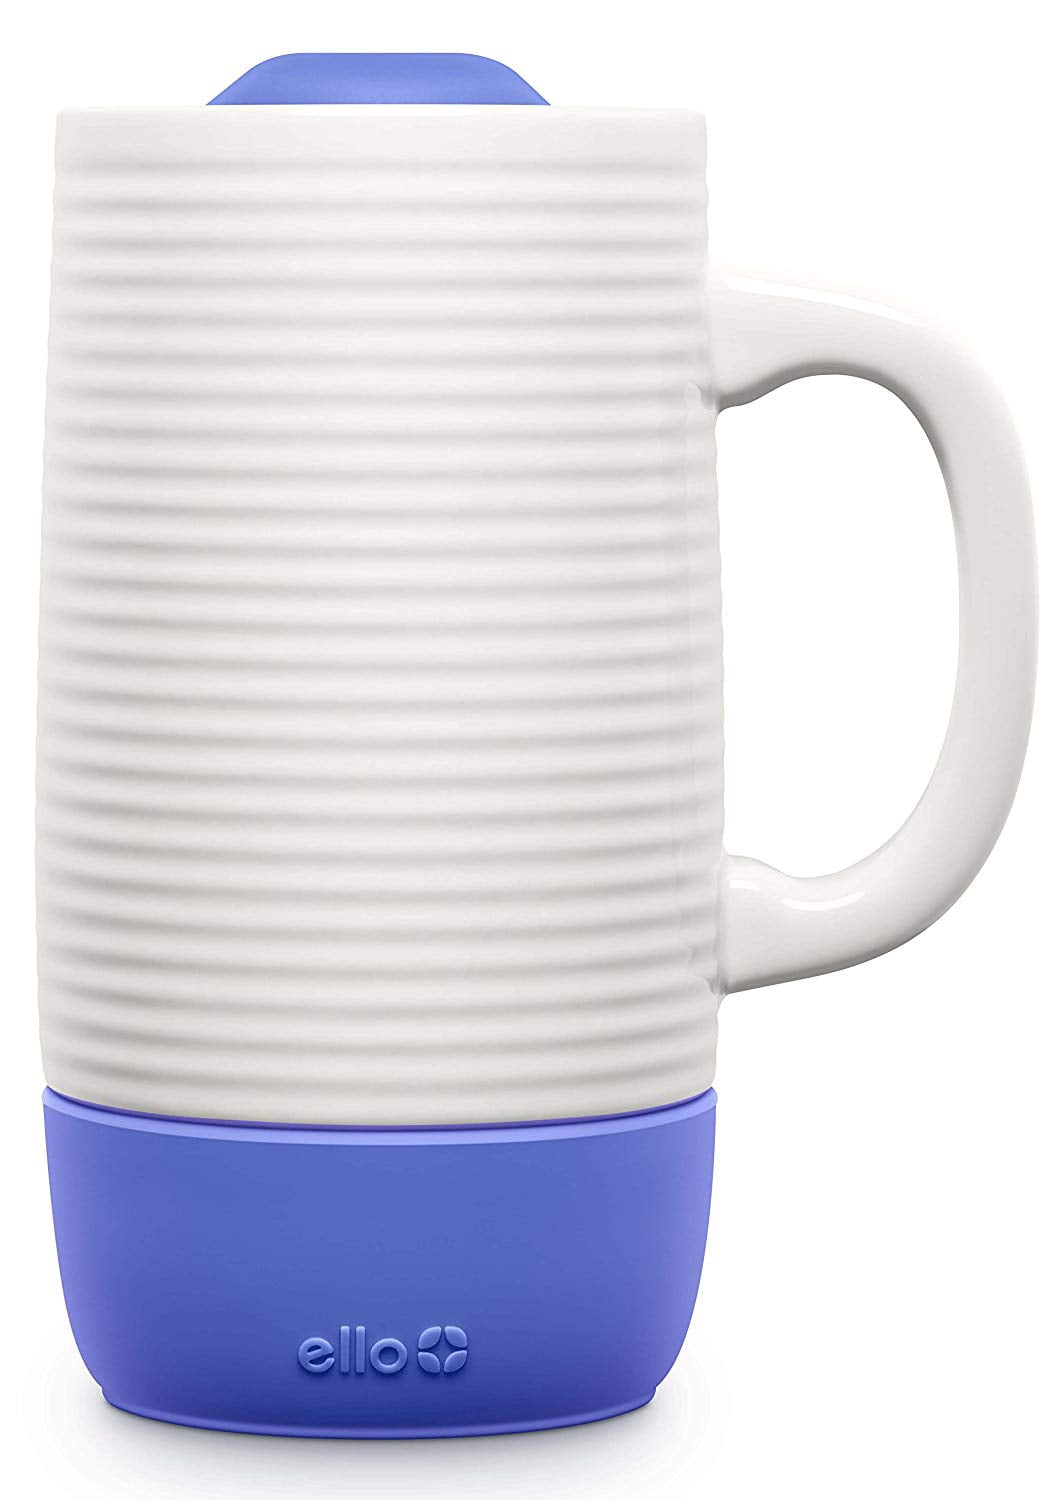 ello ceramic travel mug review